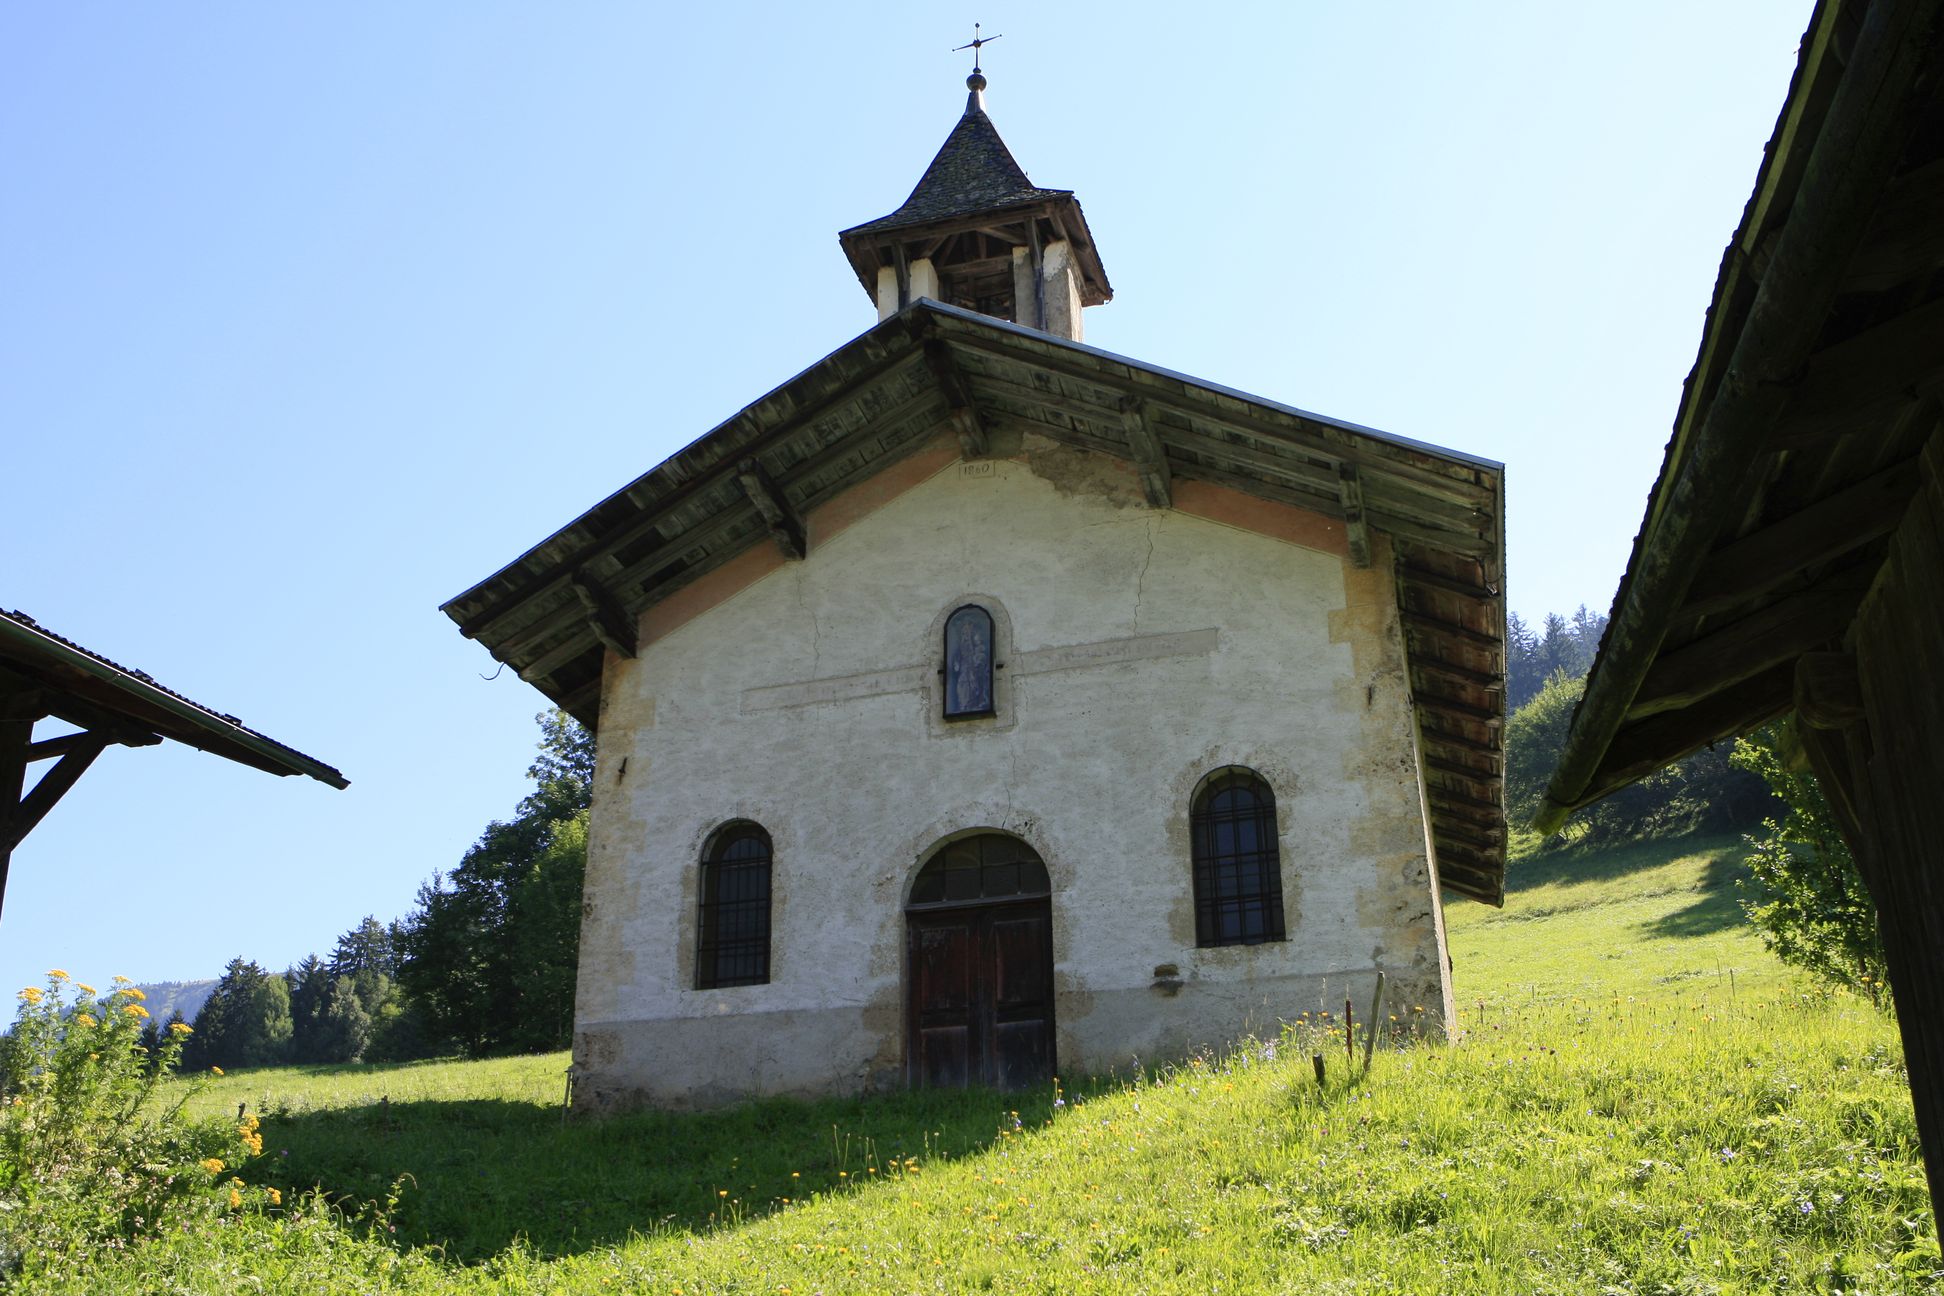 St Sauveur chapel